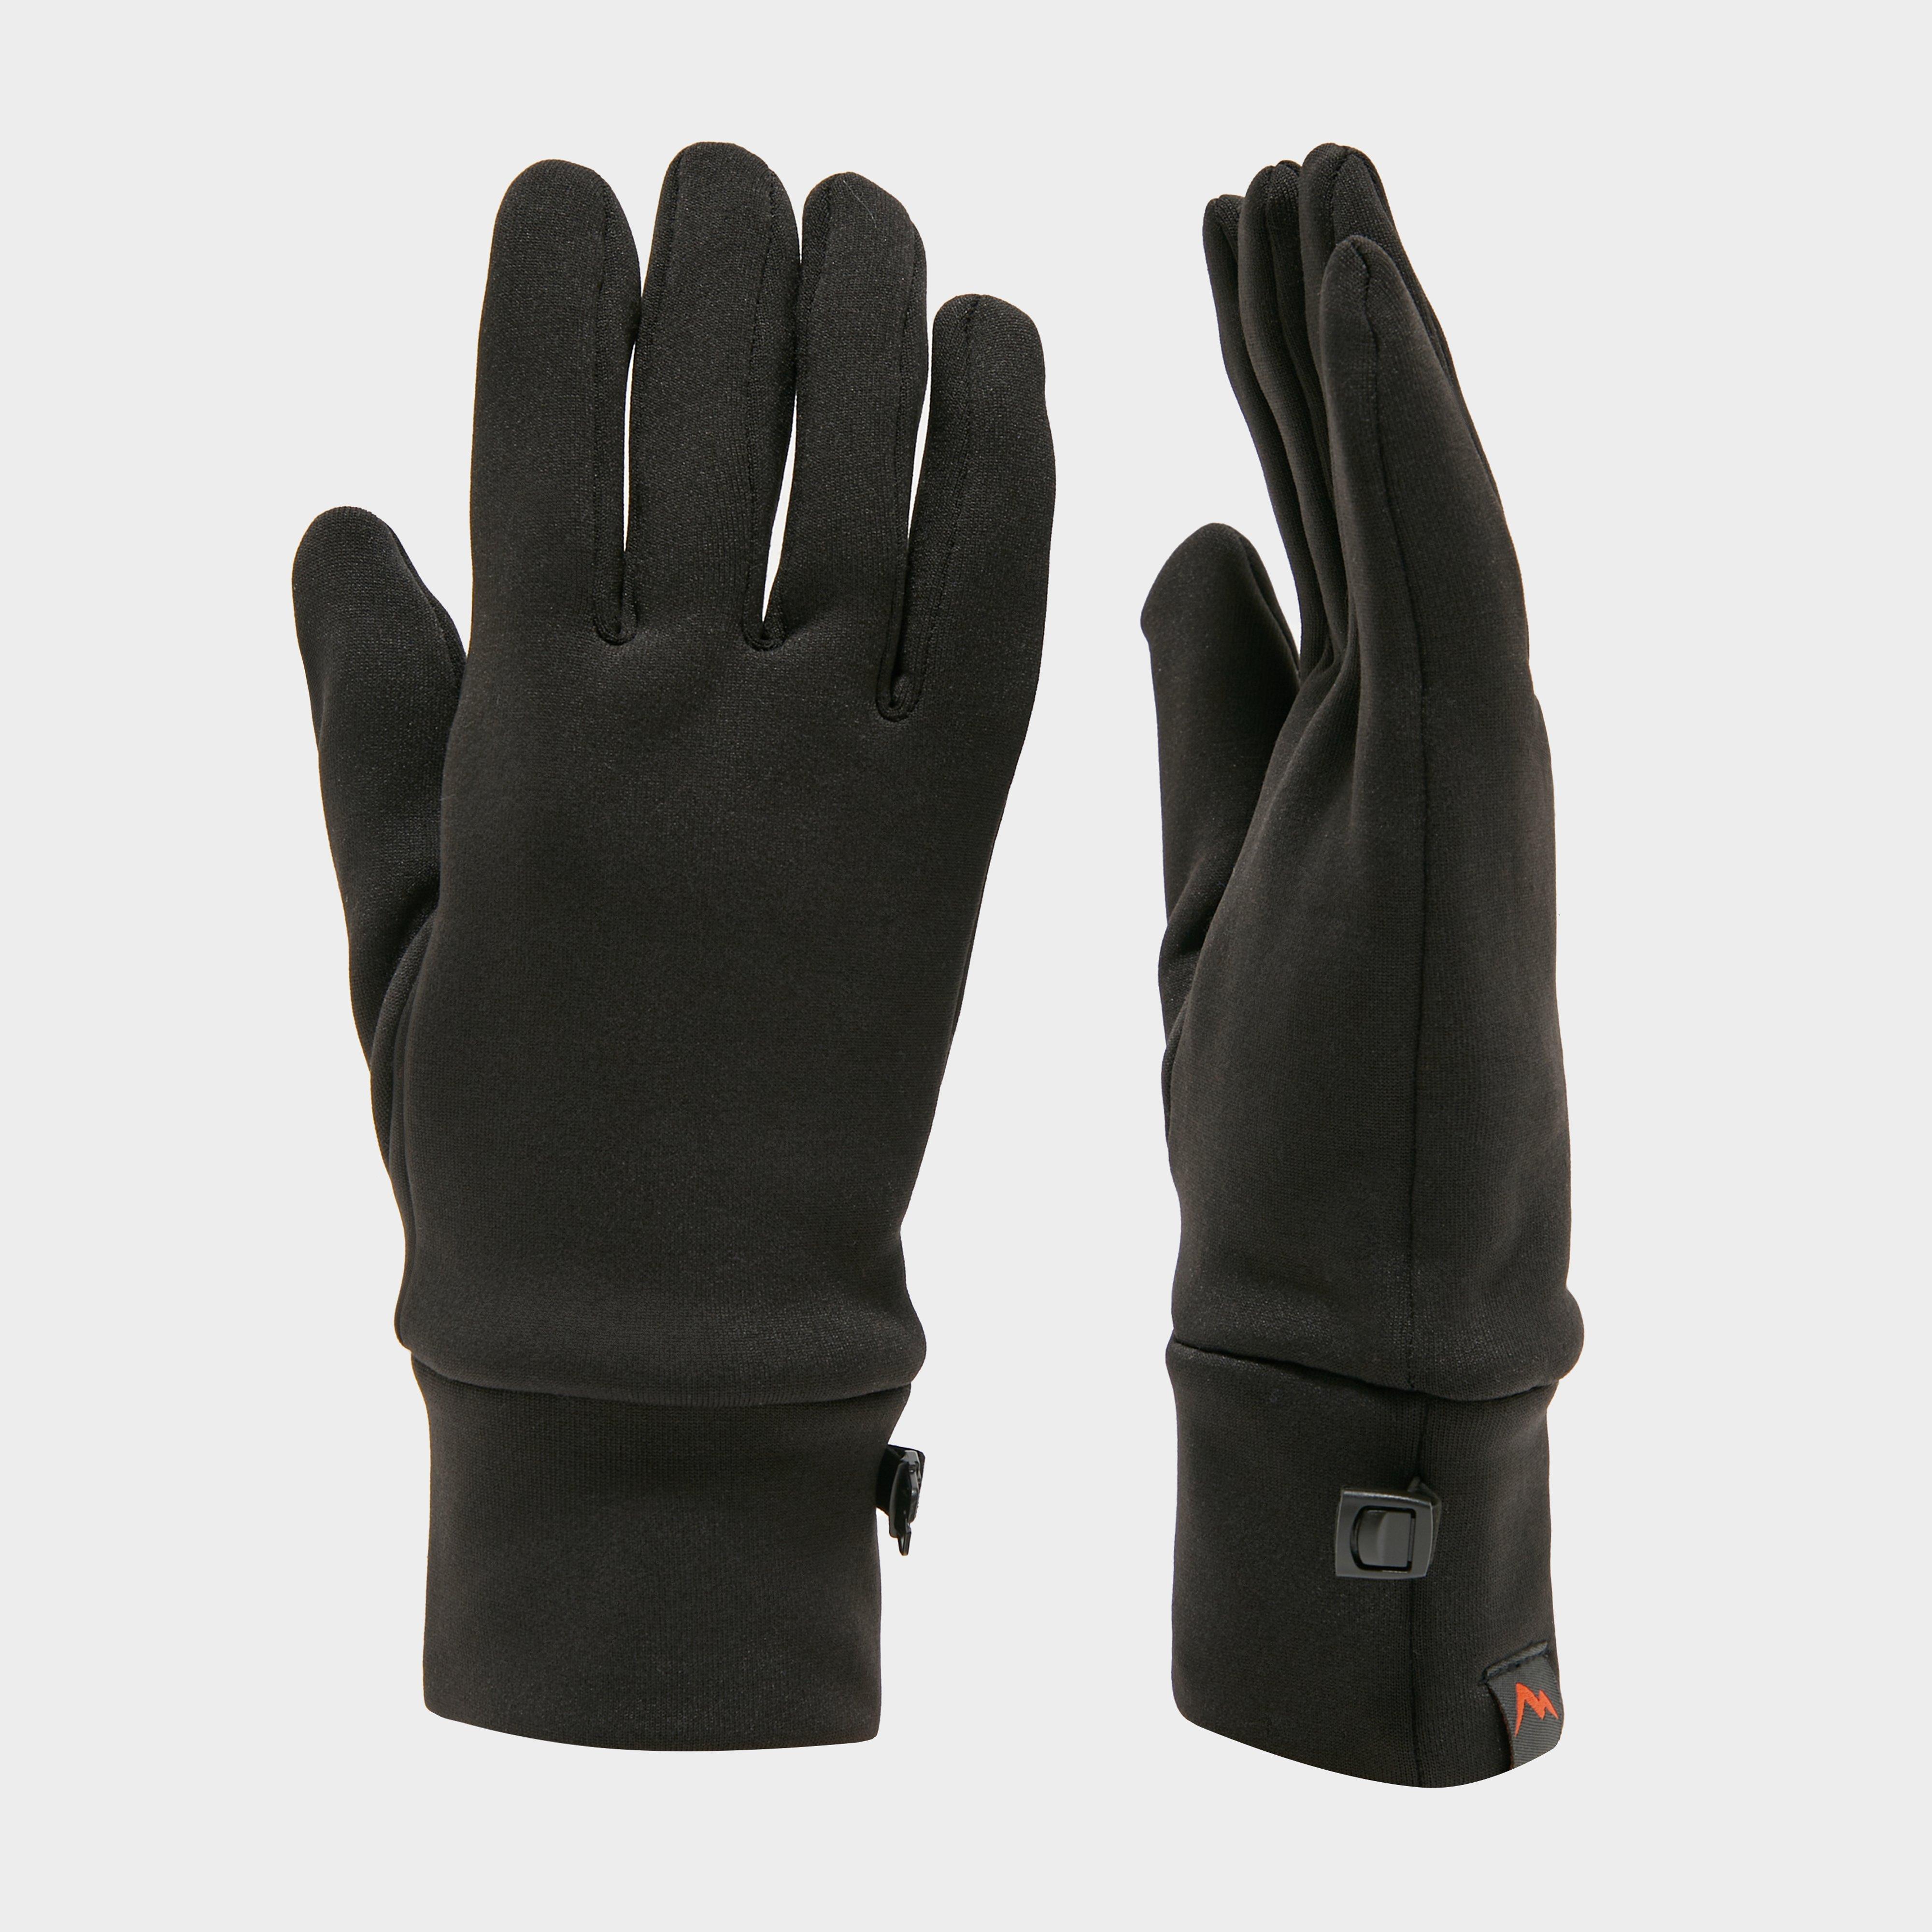 Peter Storm 6 Way Stretch Gloves - Black/blk  Black/blk